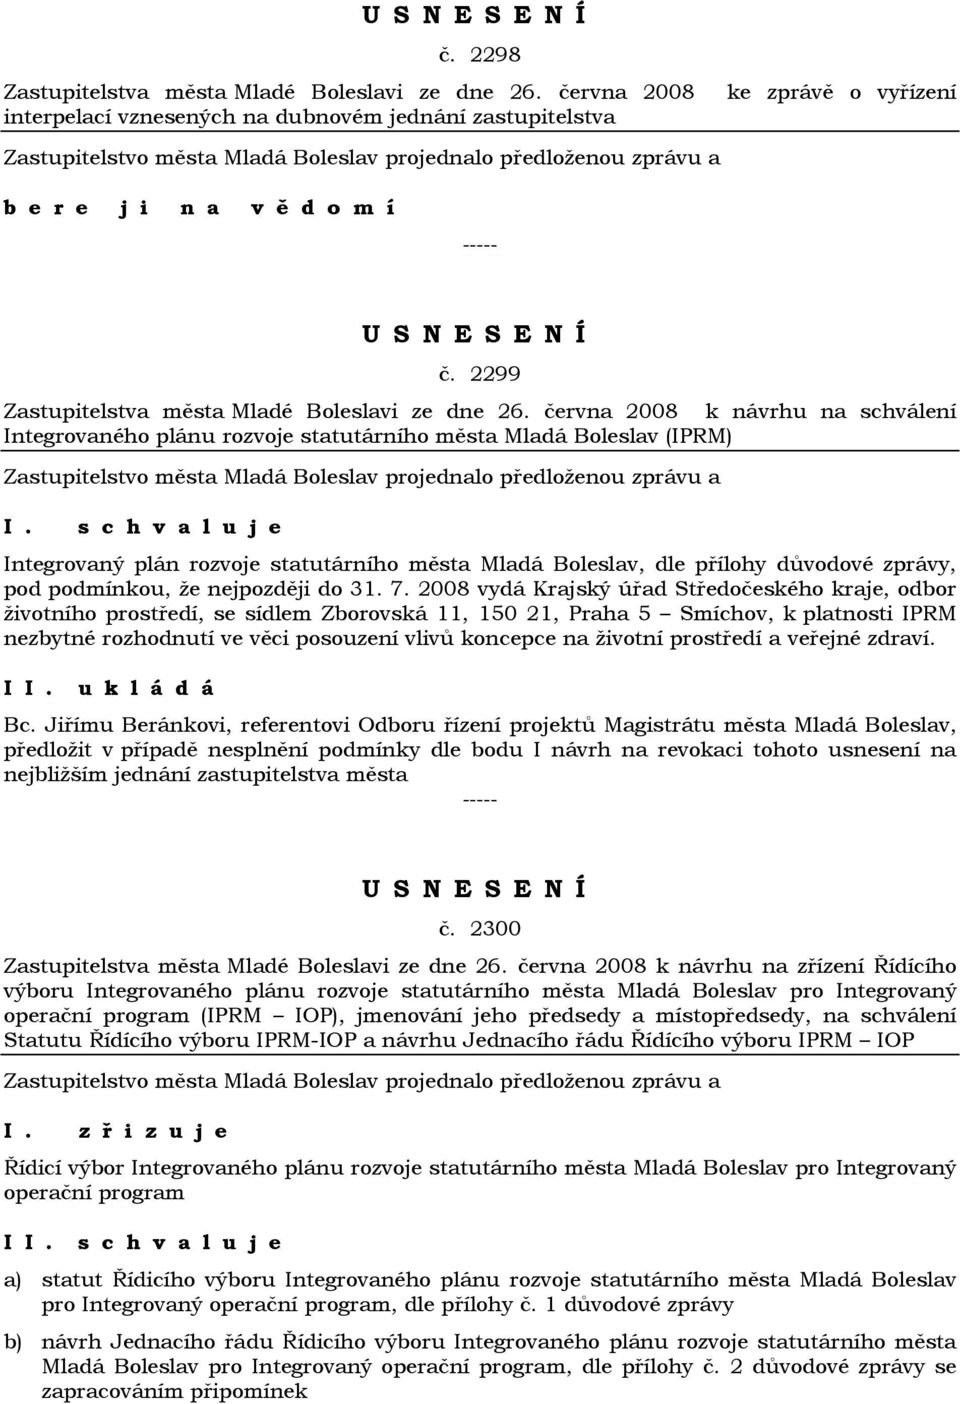 června 2008 k návrhu na schválení Integrovaného plánu rozvoje statutárního města Mladá Boleslav (IPRM) Integrovaný plán rozvoje statutárního města Mladá Boleslav, dle přílohy důvodové zprávy, pod